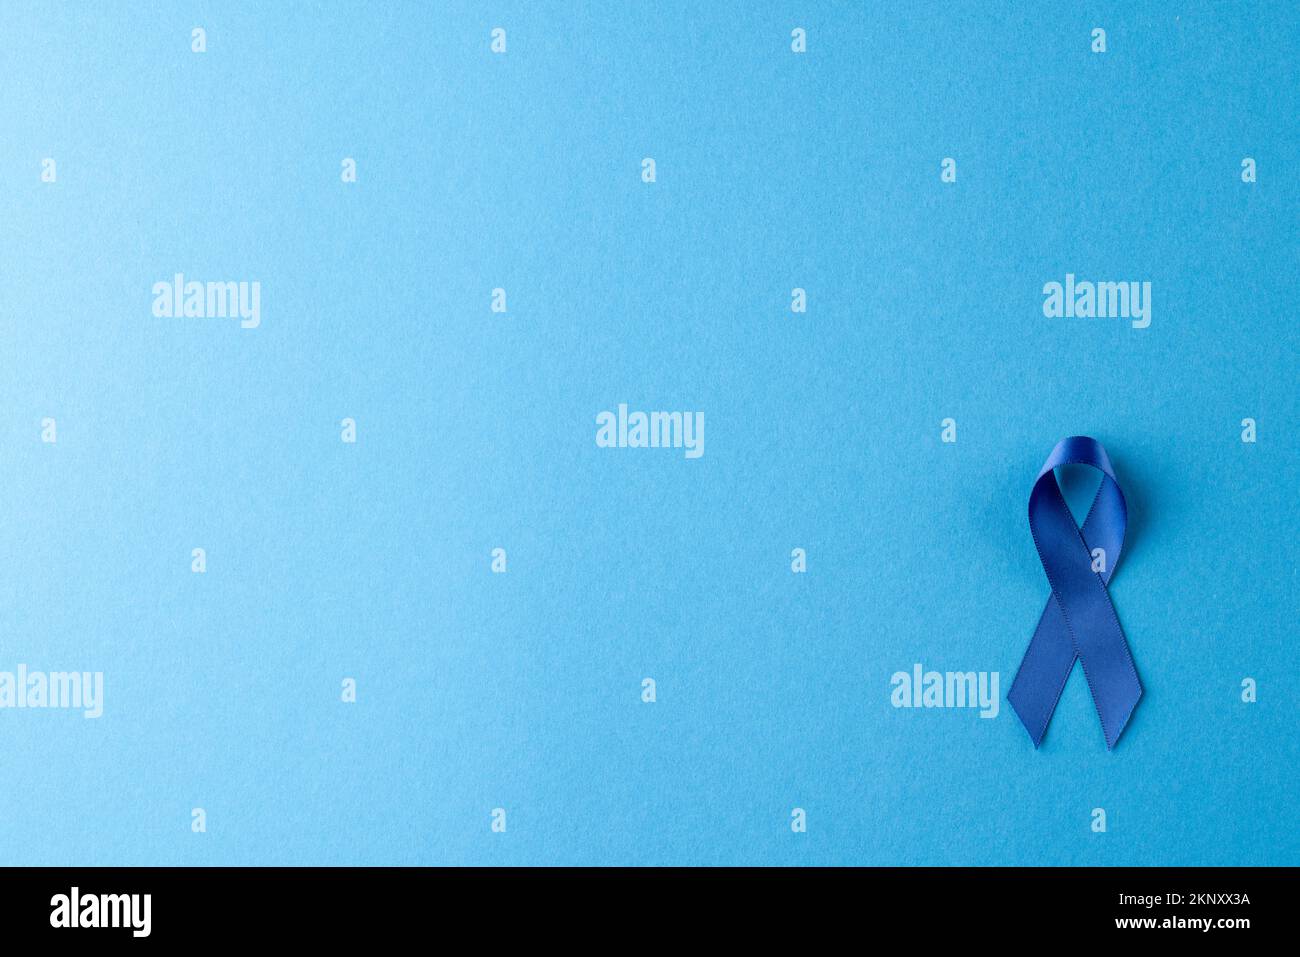 Composition d'un ruban bleu pour la sensibilisation au cancer de la prostate, sur fond bleu avec espace de copie Banque D'Images